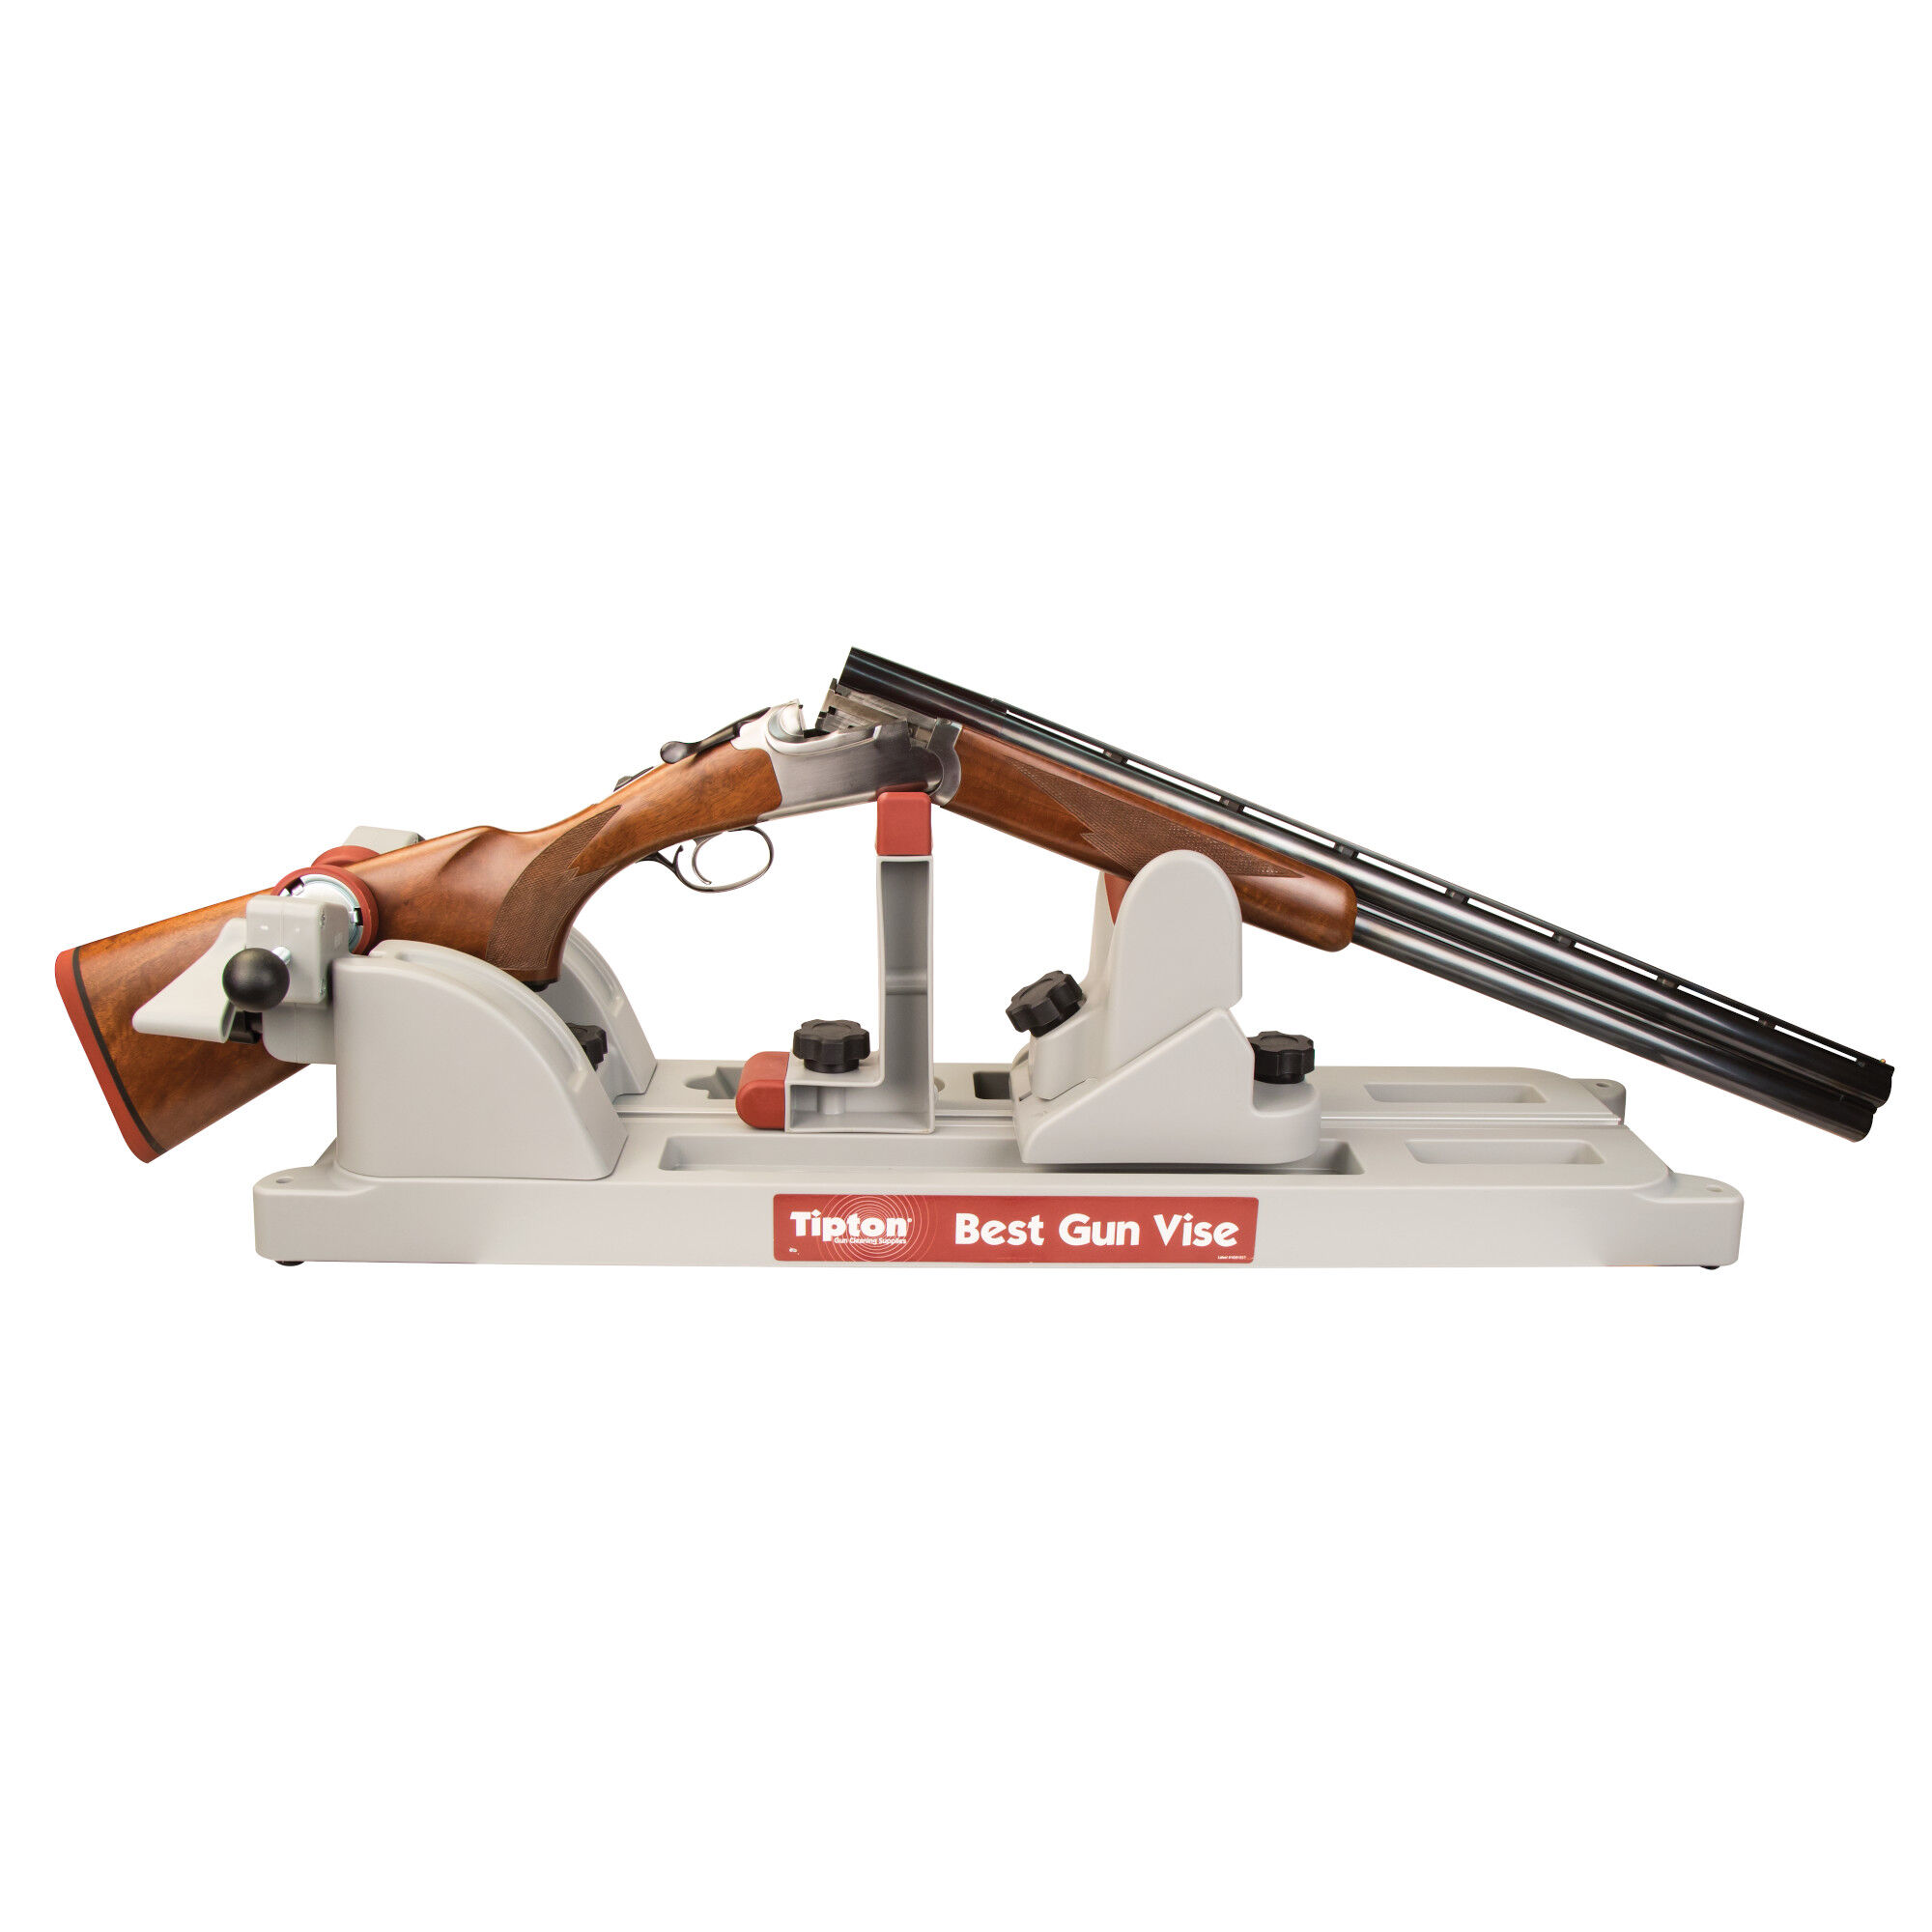 Vise Gun Clean Shotgun Rifle Gunsmith Tool Kit Military Grip Maintenance Tipton 